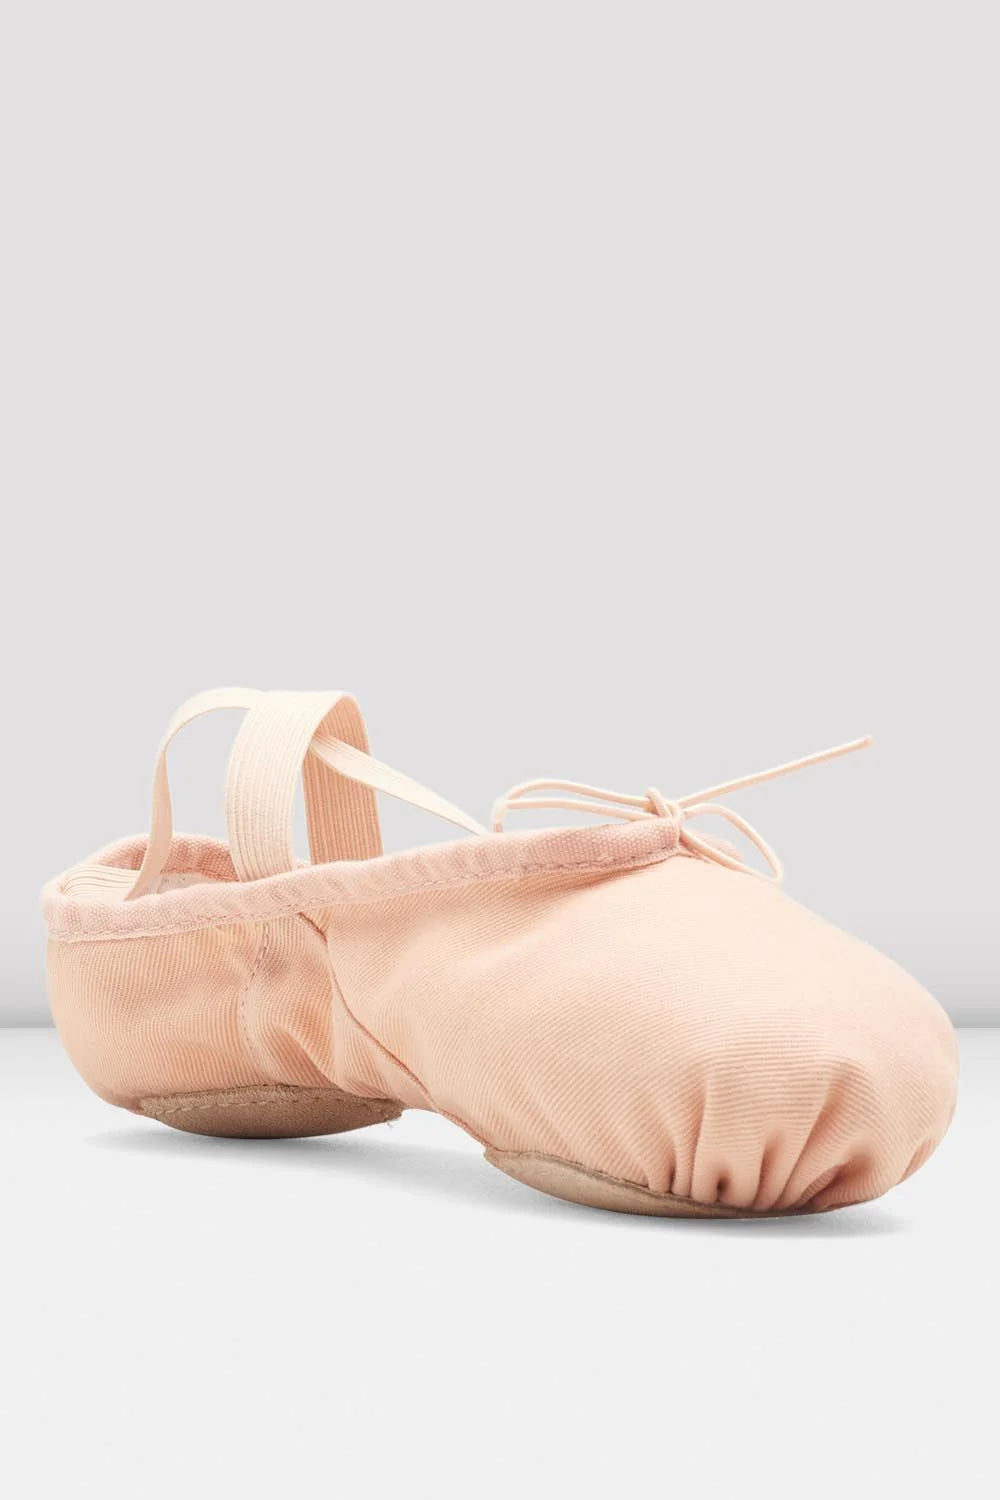 BLOCH Prolite II Adults Canvas Split Sole Ballet Shoe